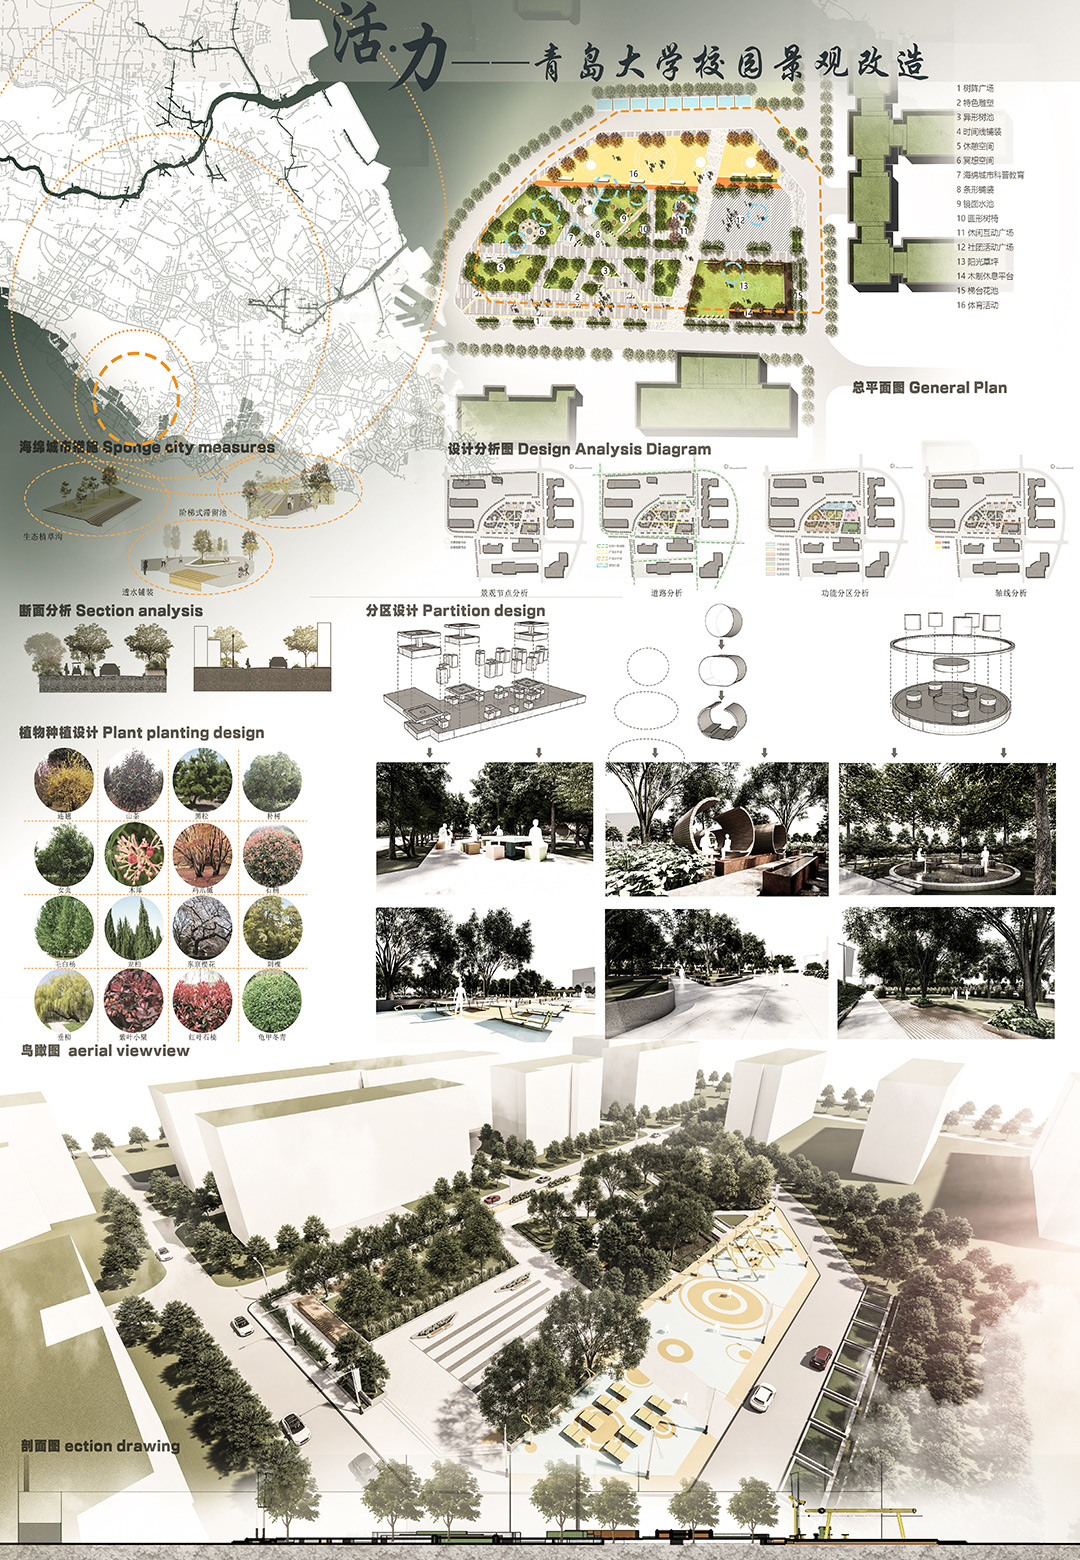 青岛大学 | 景观设计 | 《活力·青岛大学景观改造设计》创作者：徐远久 指导老师：卢晶